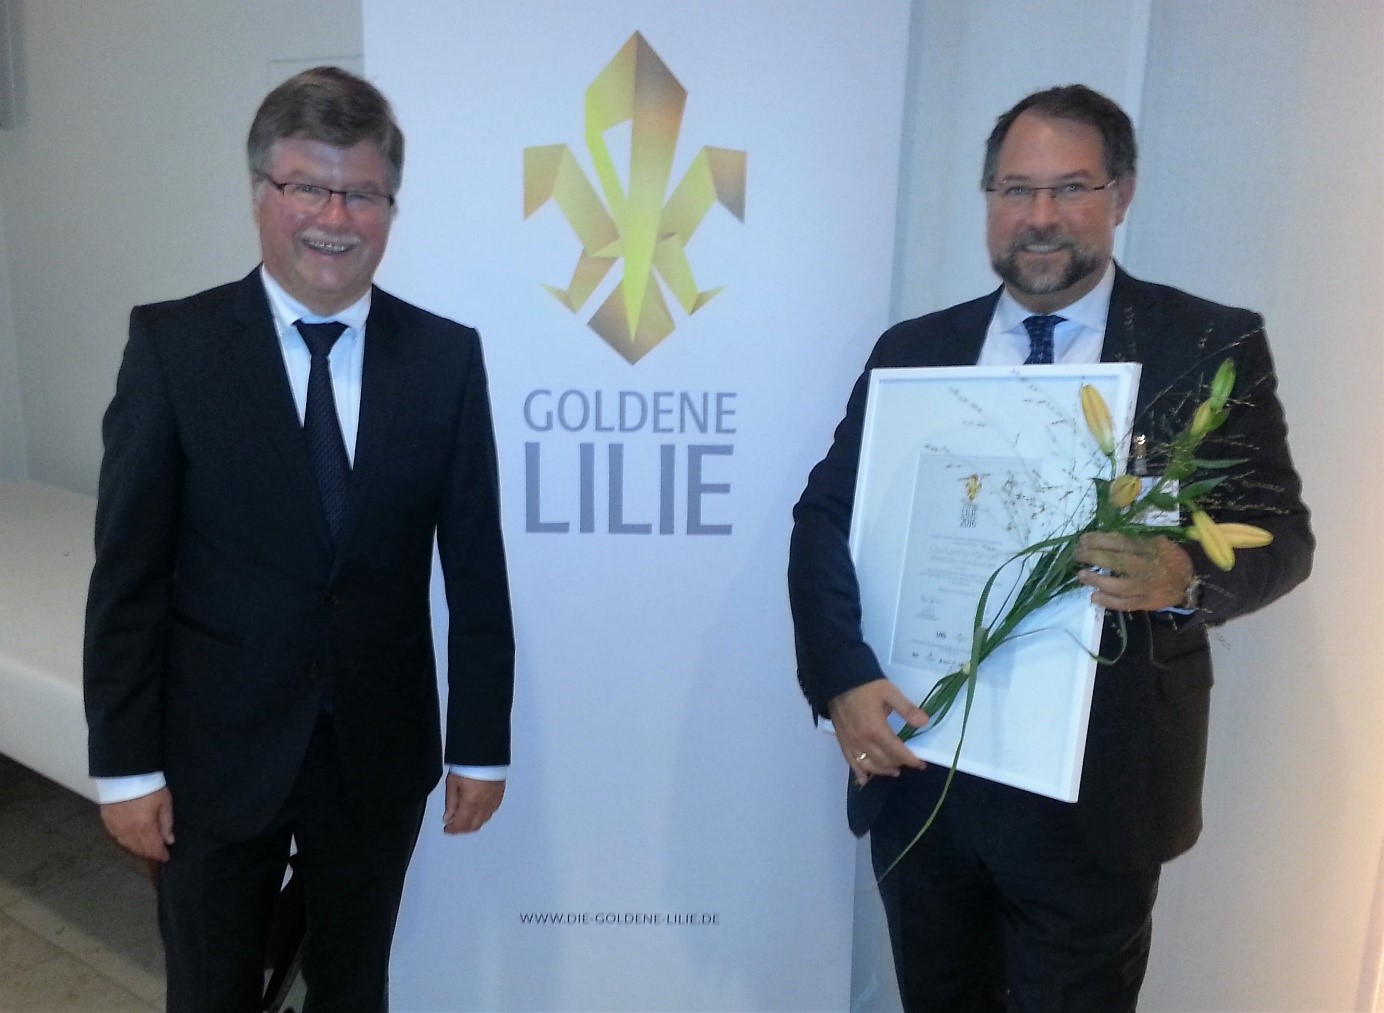 Bürgermeister Arno Goßmann (l.) und Harald Hock, General Manager (r.), bei der Verleihung der Goldenen Lilie 2016 für das Hotel Courtyard by Marriott Wiesbaden-Nordenstadt. Foto: privat